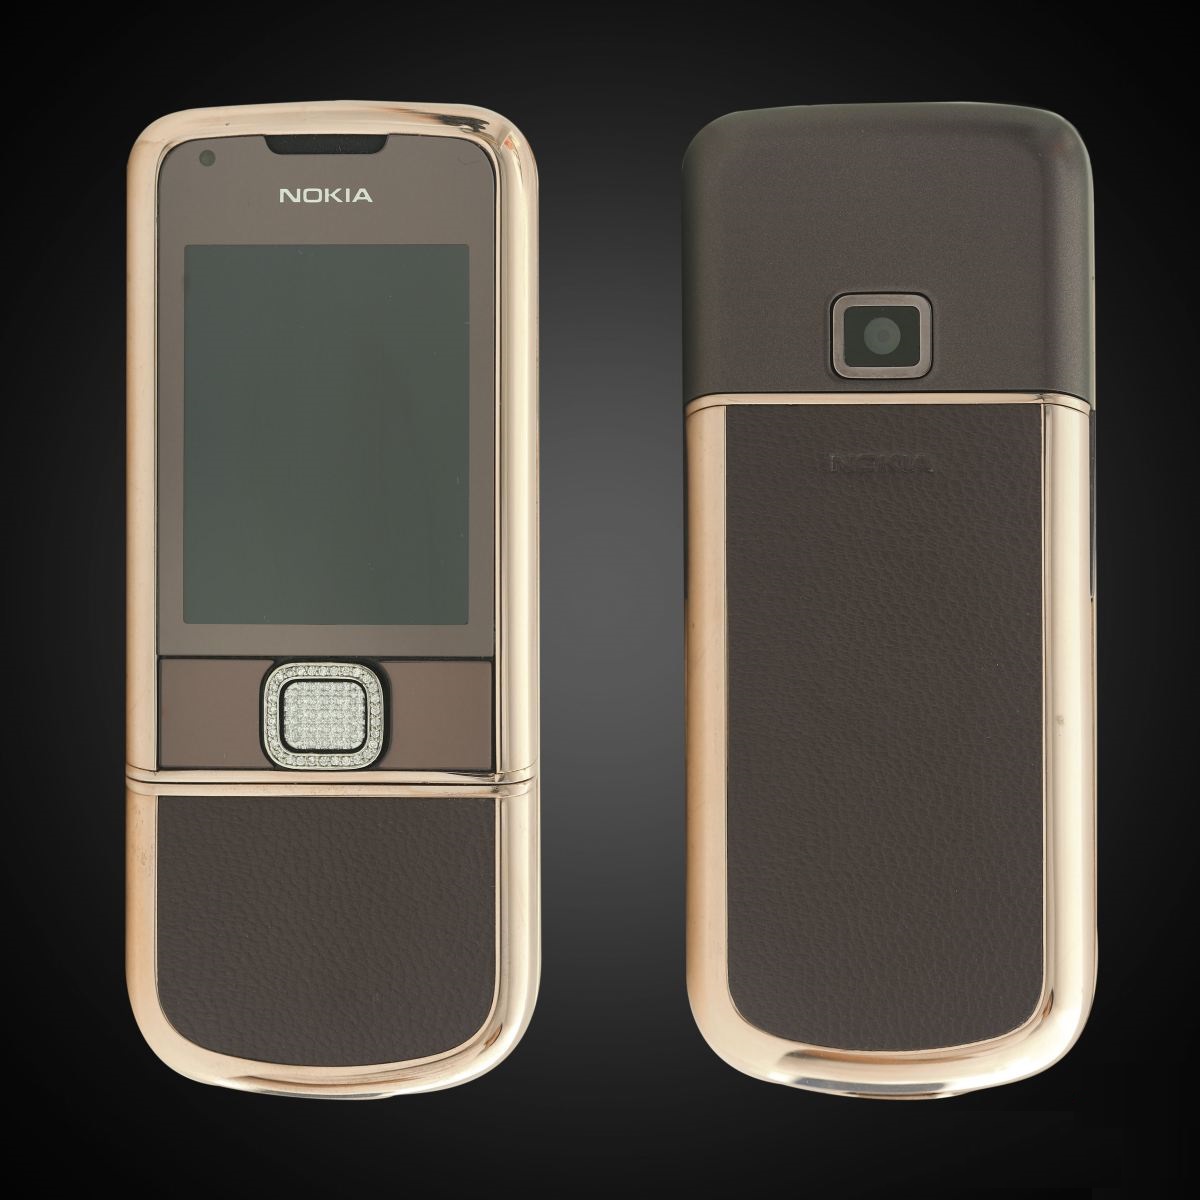 Nokia 8800E Rose Gold: Nokia 8800E Rose Gold - một sản phẩm được ưa chuộng bởi sự sang trọng, đẳng cấp và độc đáo. Thiết kế mỏng nhẹ, sang trọng với lớp vỏ màu hồng kim cương đầy lôi cuốn. Chất lượng tốt, tích hợp đầy đủ các tính năng cần thiết để bạn tự tin sử dụng.Tiếp cận ngay ảnh để trải nghiệm Nokia 8800E Rose Gold sang trọng và đẳng cấp nhé!